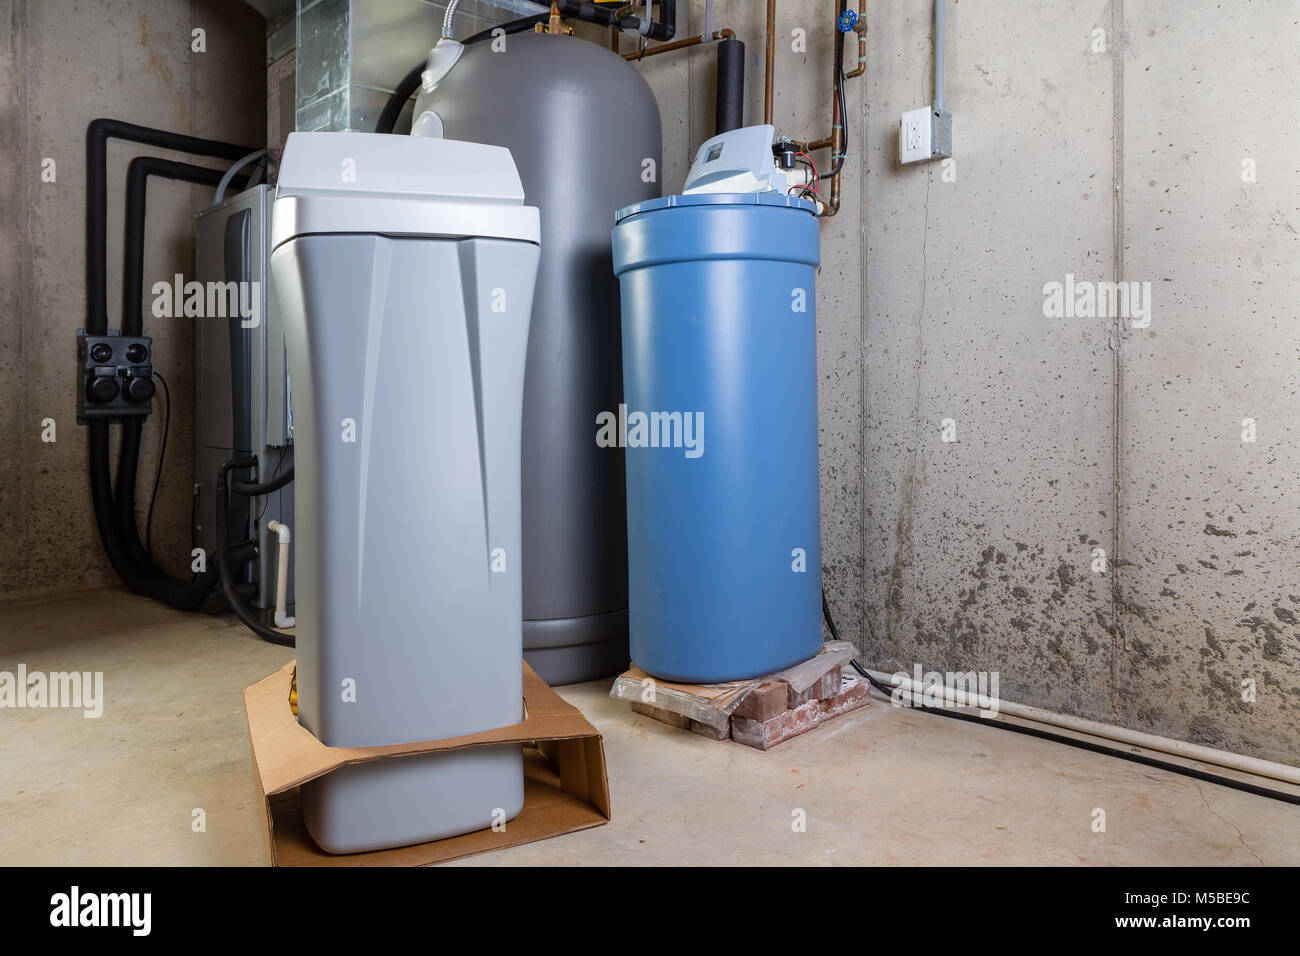 Alte und Neue wasserenthärter Tanks in einem Hauswirtschaftsraum warten auf Ersatz Mineralien aus hartem Wasser zu entfernen. Stockfoto